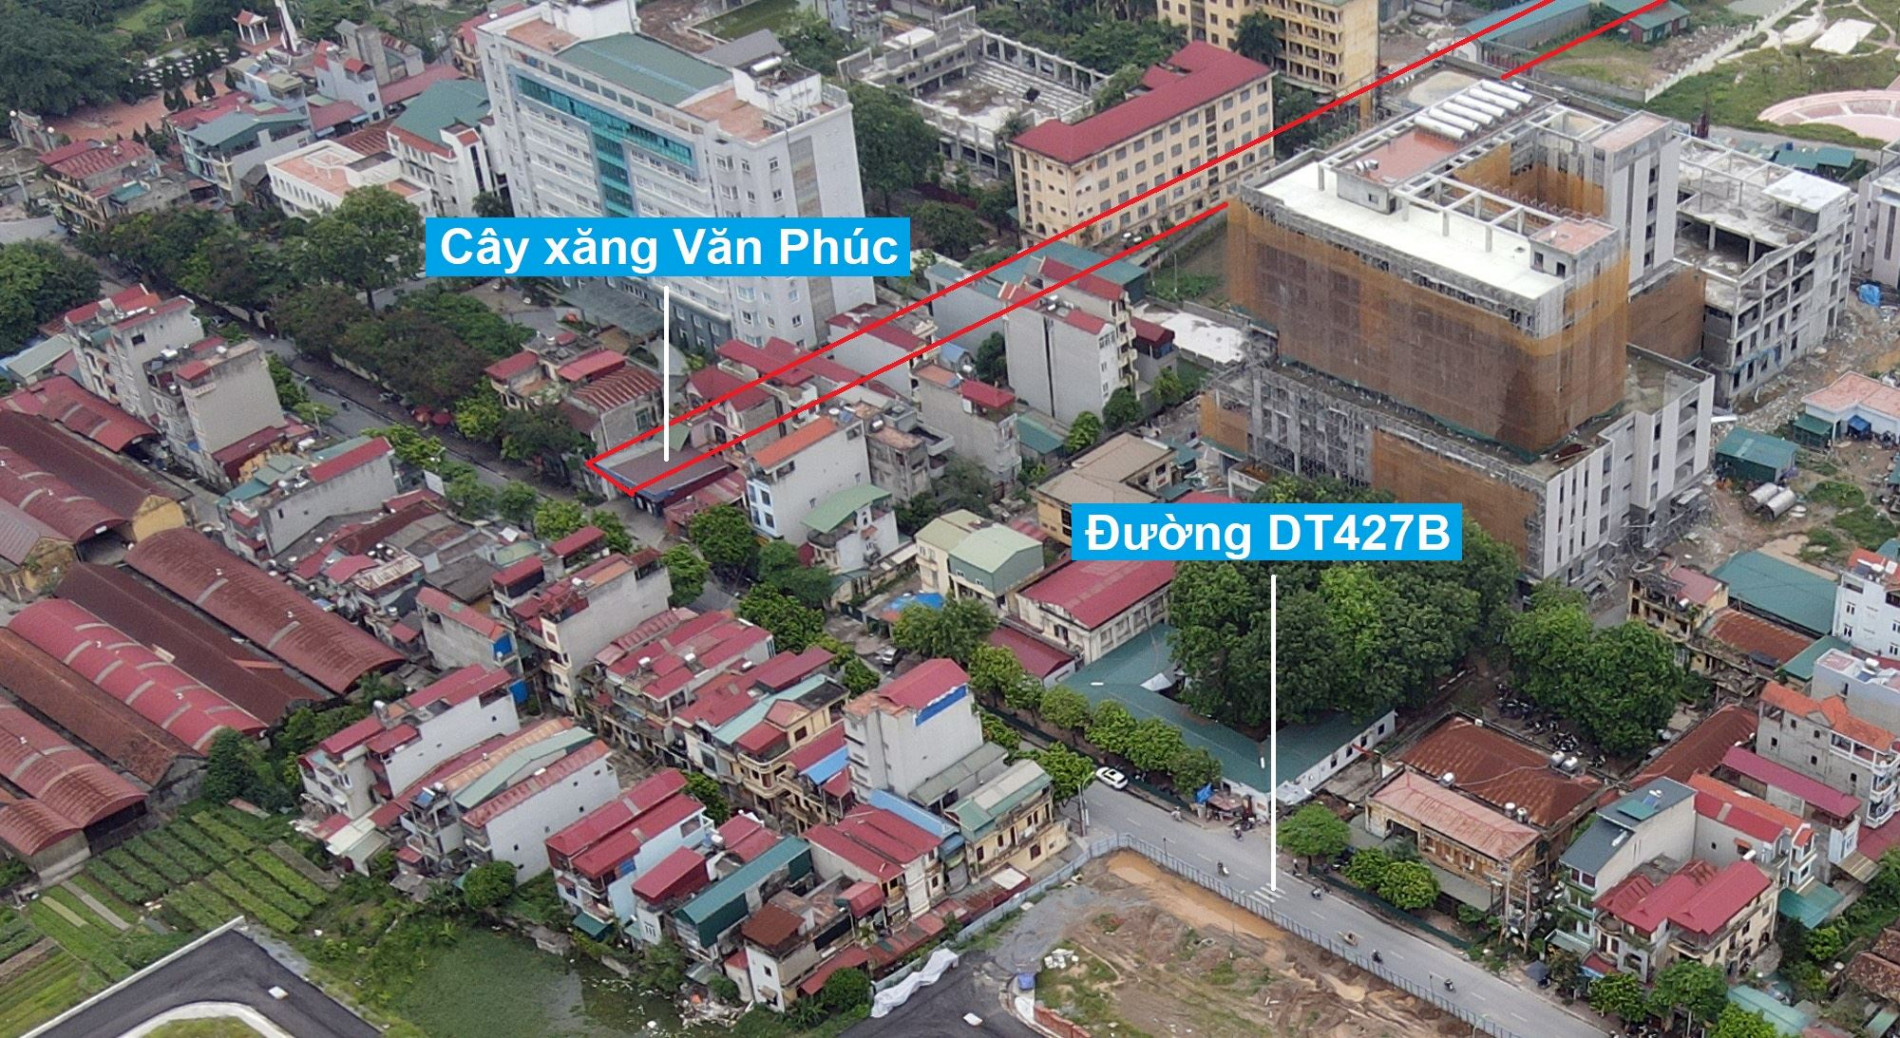 Đường sẽ mở theo quy hoạch ở thị trấn Thường Tín, Thường Tín, Hà Nội (phần 3)